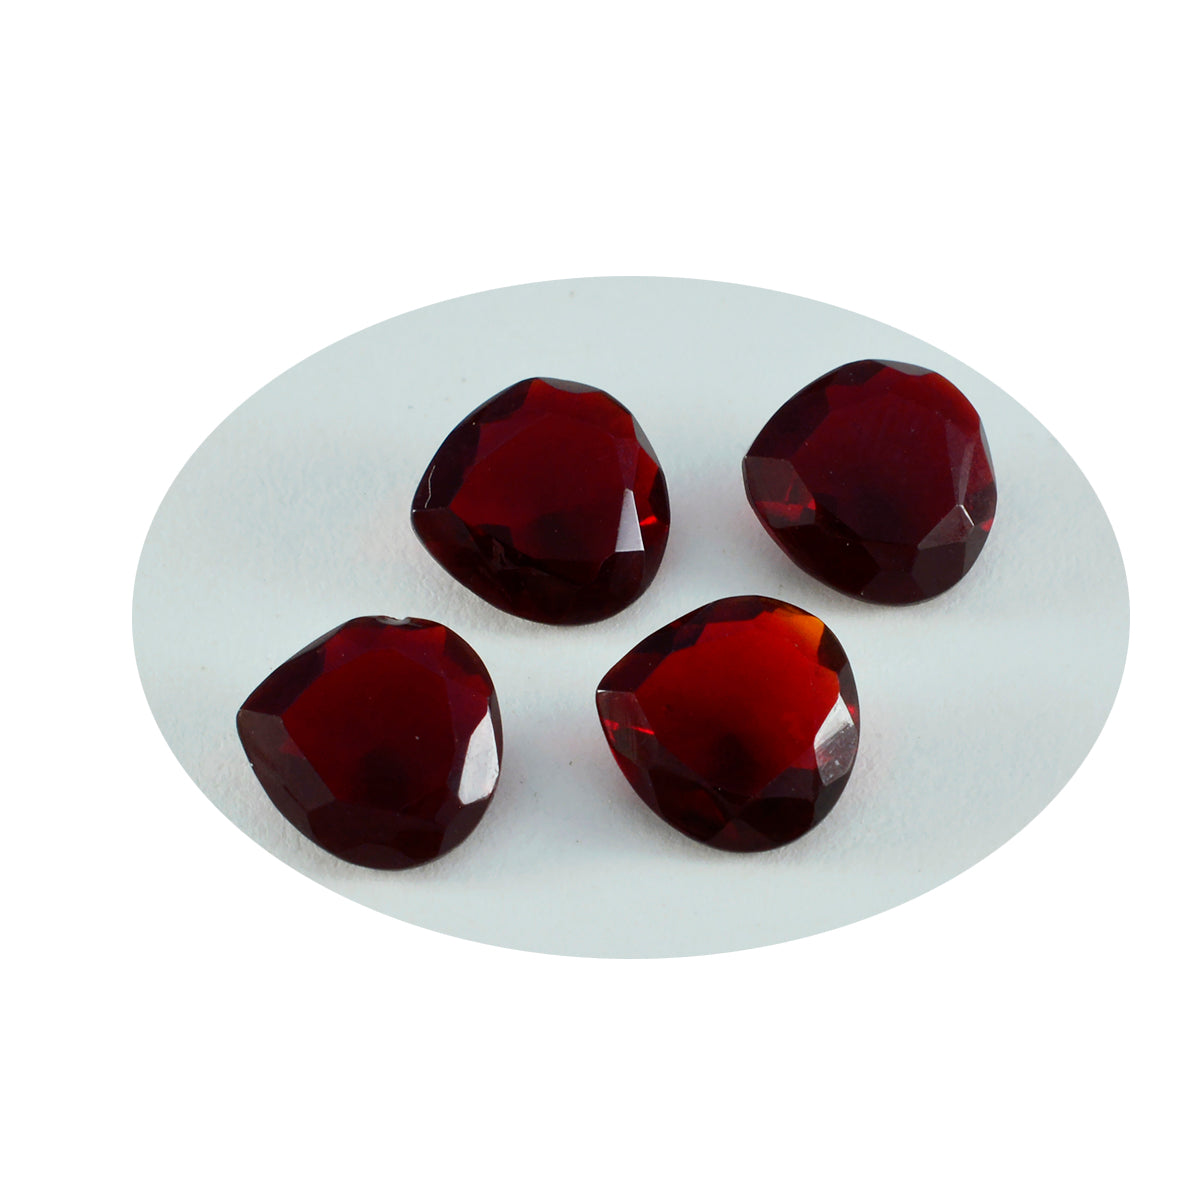 riyogems 1pz rubino rosso cz sfaccettato 11x11 mm a forma di cuore pietra preziosa sciolta di qualità straordinaria